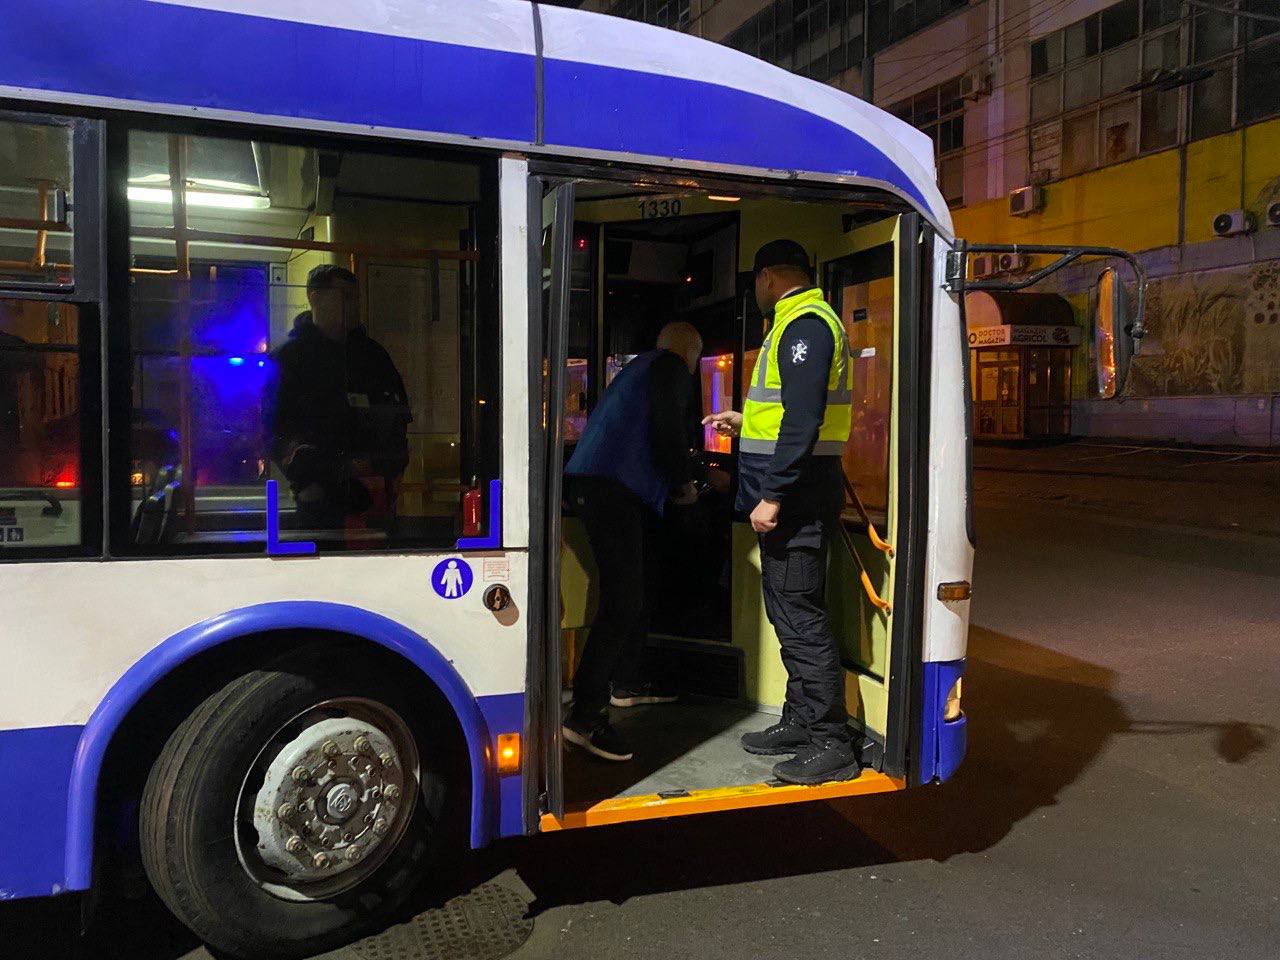 (FOTO) Troleibuzele, autobuzele și taxiurile din Chișinău s-au umplut de polițiști. Șase șoferi au rămas fără permis de conducere